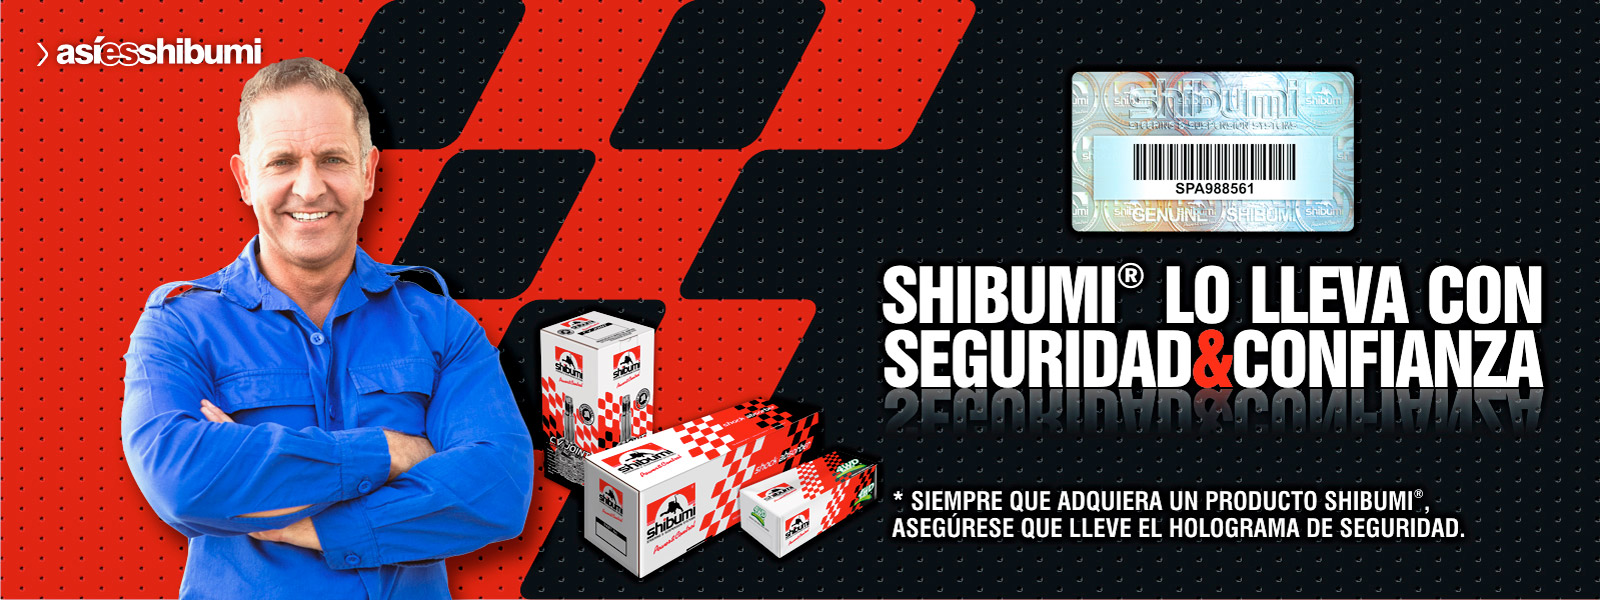 Holograma Shibumi en amortiguadores, terminales y rótulas, brazo axial